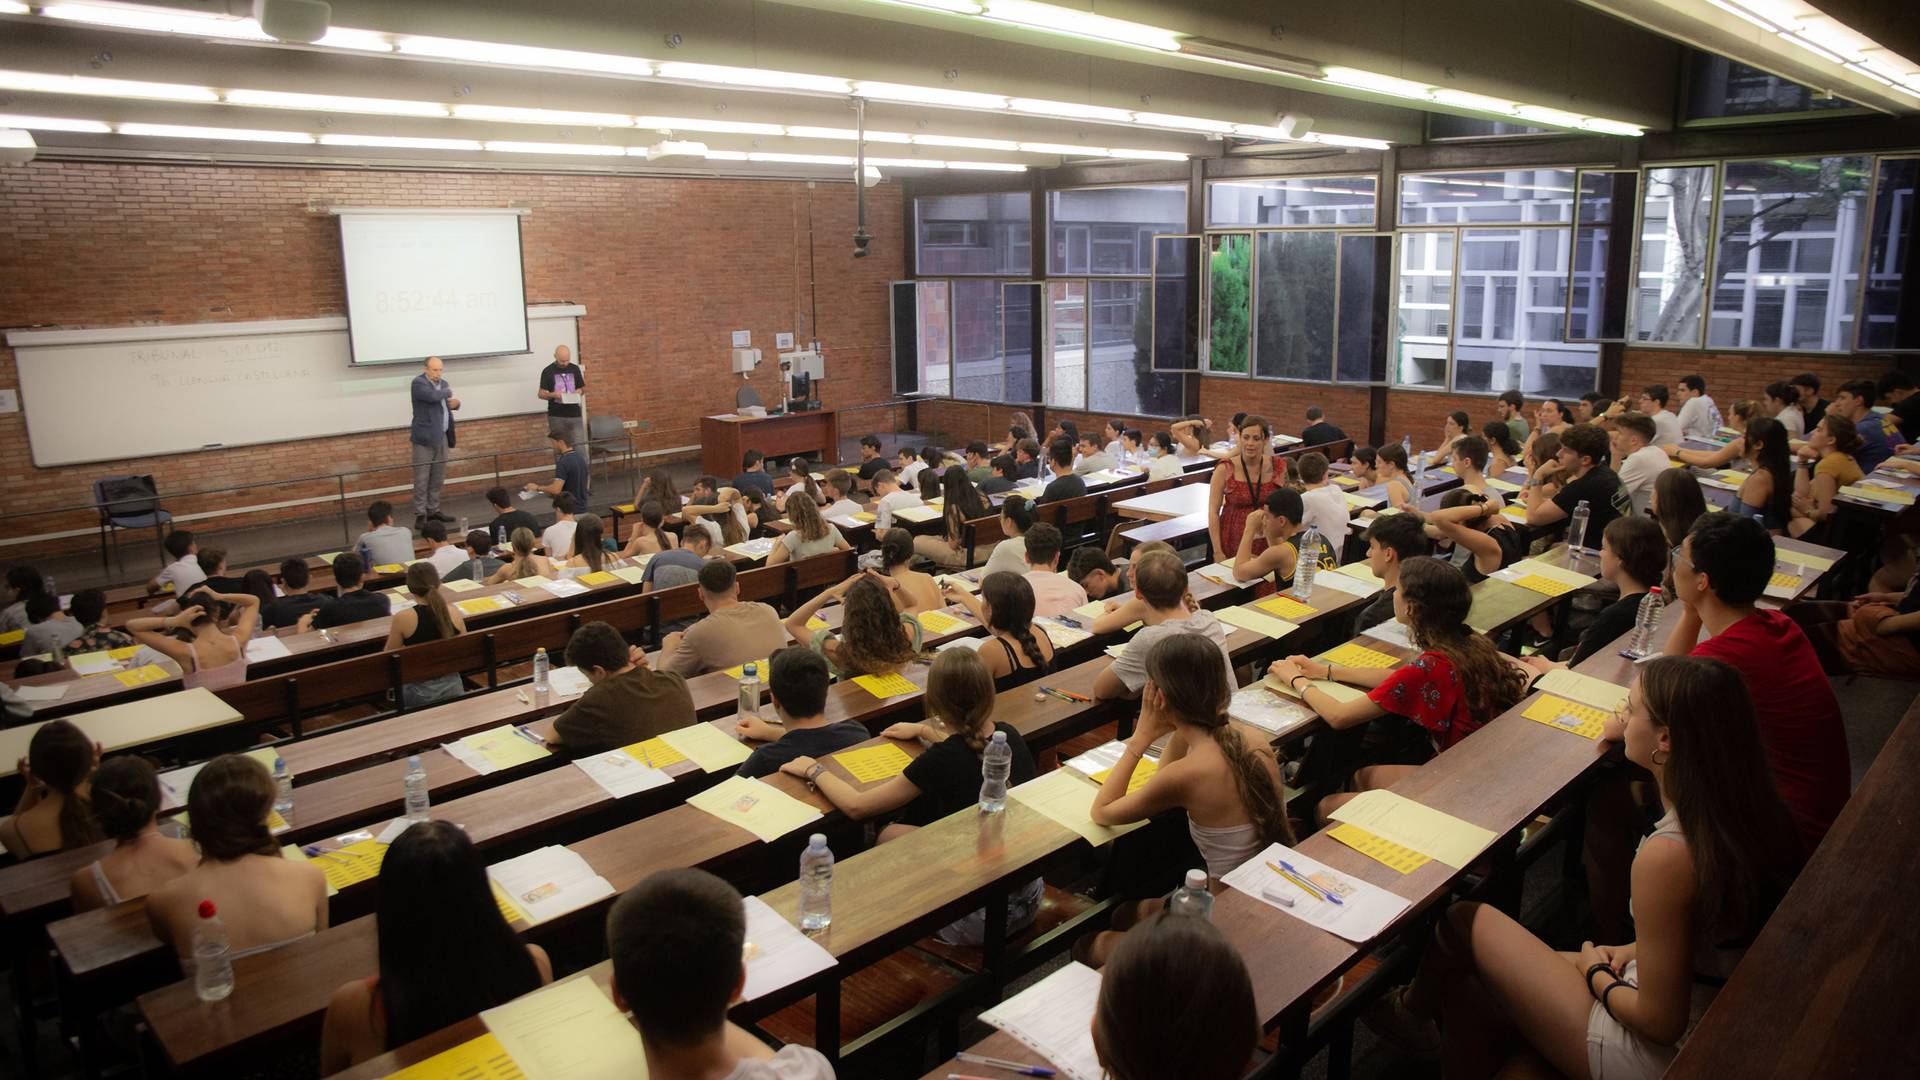 Kiderült, mehetnek-e Erasmusra az alapítványi egyetemek hallgatói 2024-ben